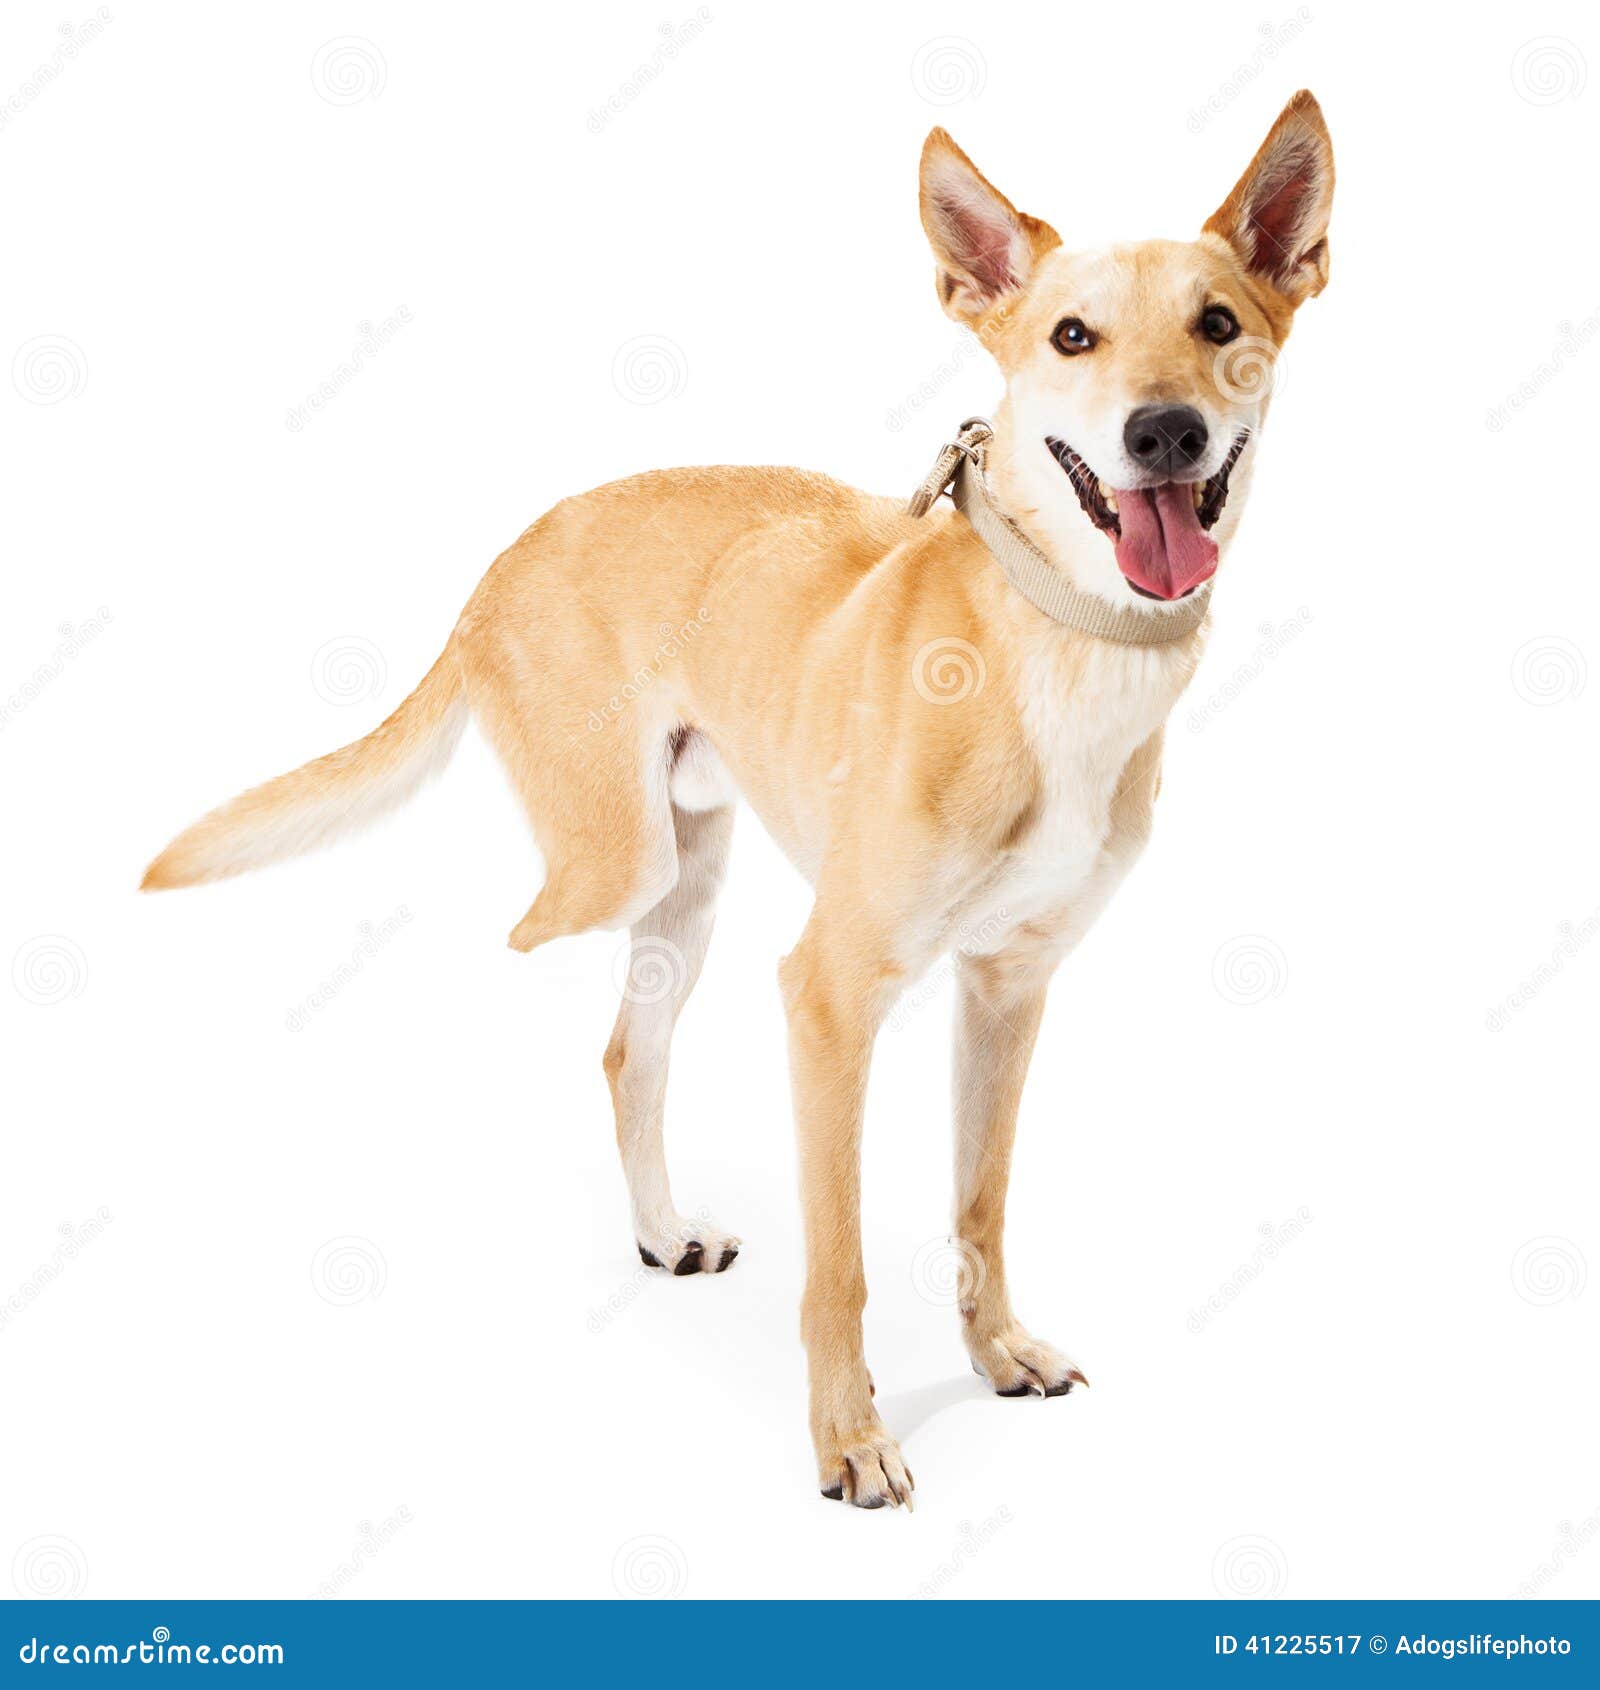 Rescue Dog Missing Back Leg Stock Photo - Image: 41225517